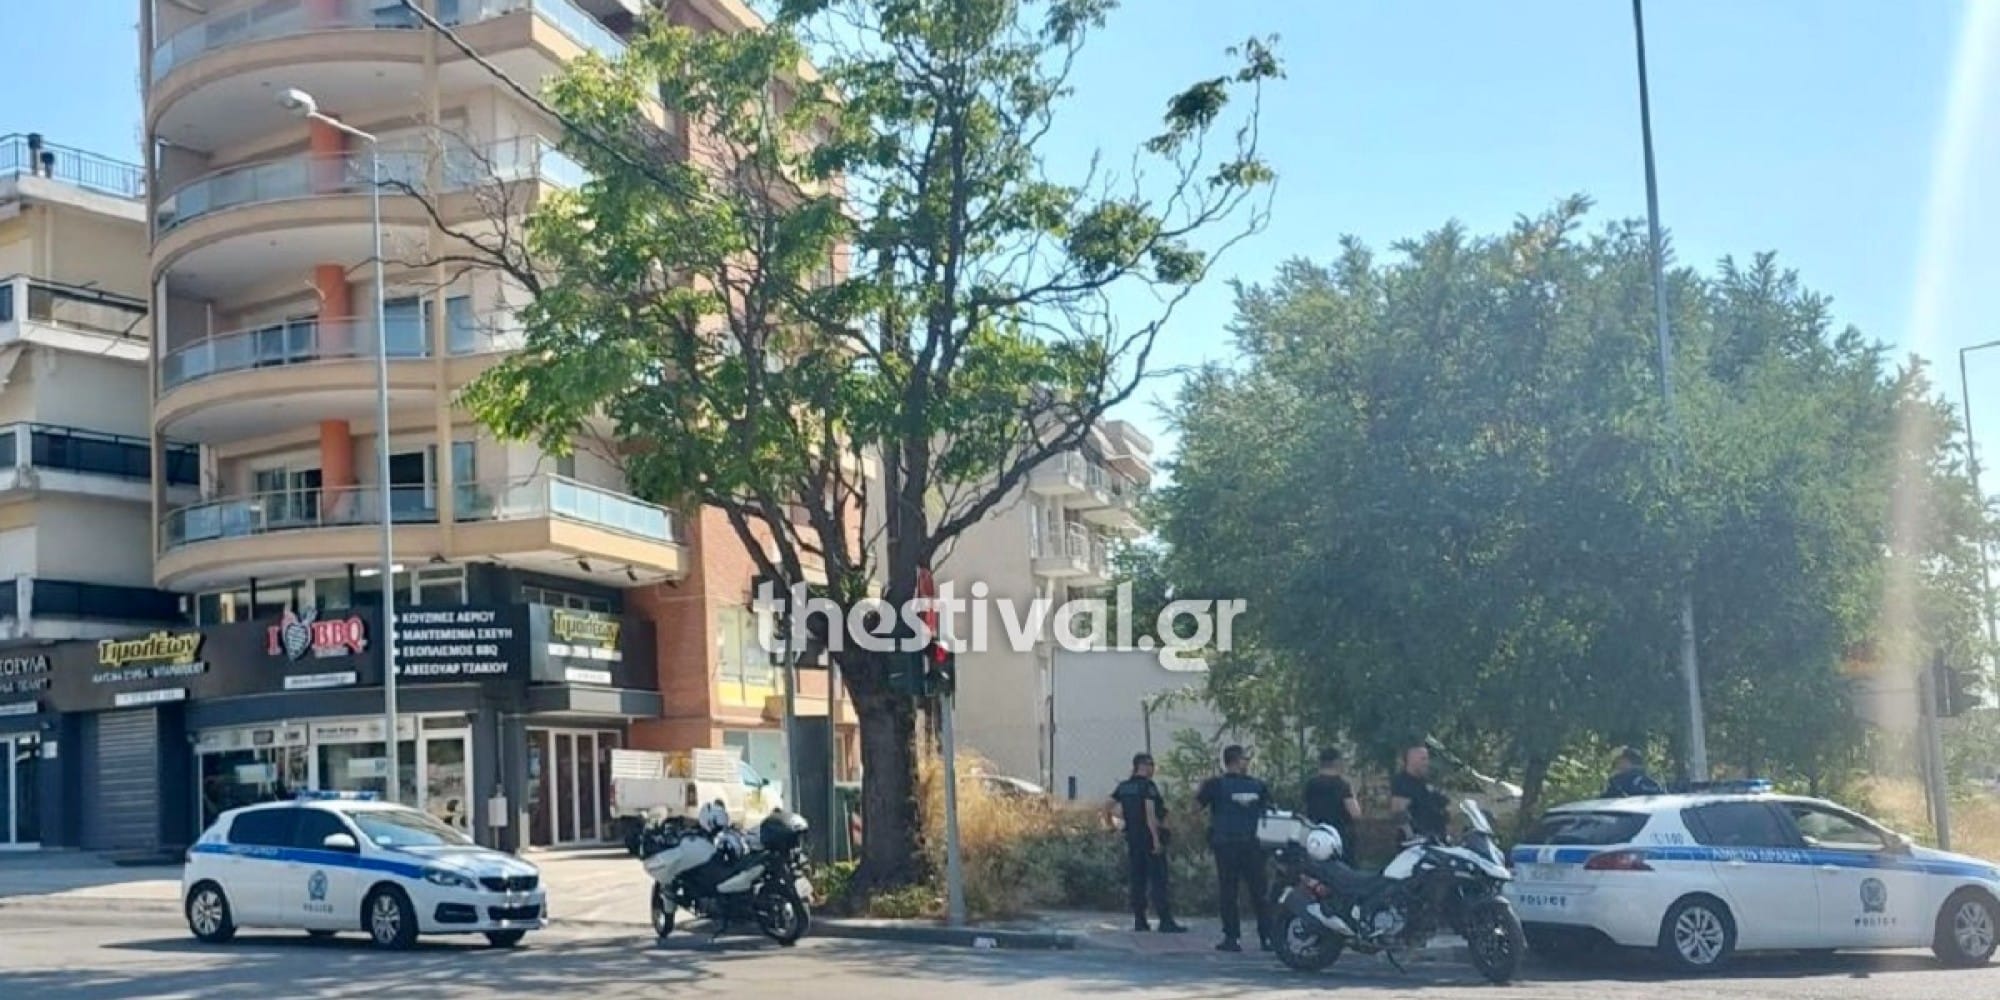 Μεθυσμένος βγήκε οπλισμένος στο μπαλκόνι στη Θεσσαλονίκη